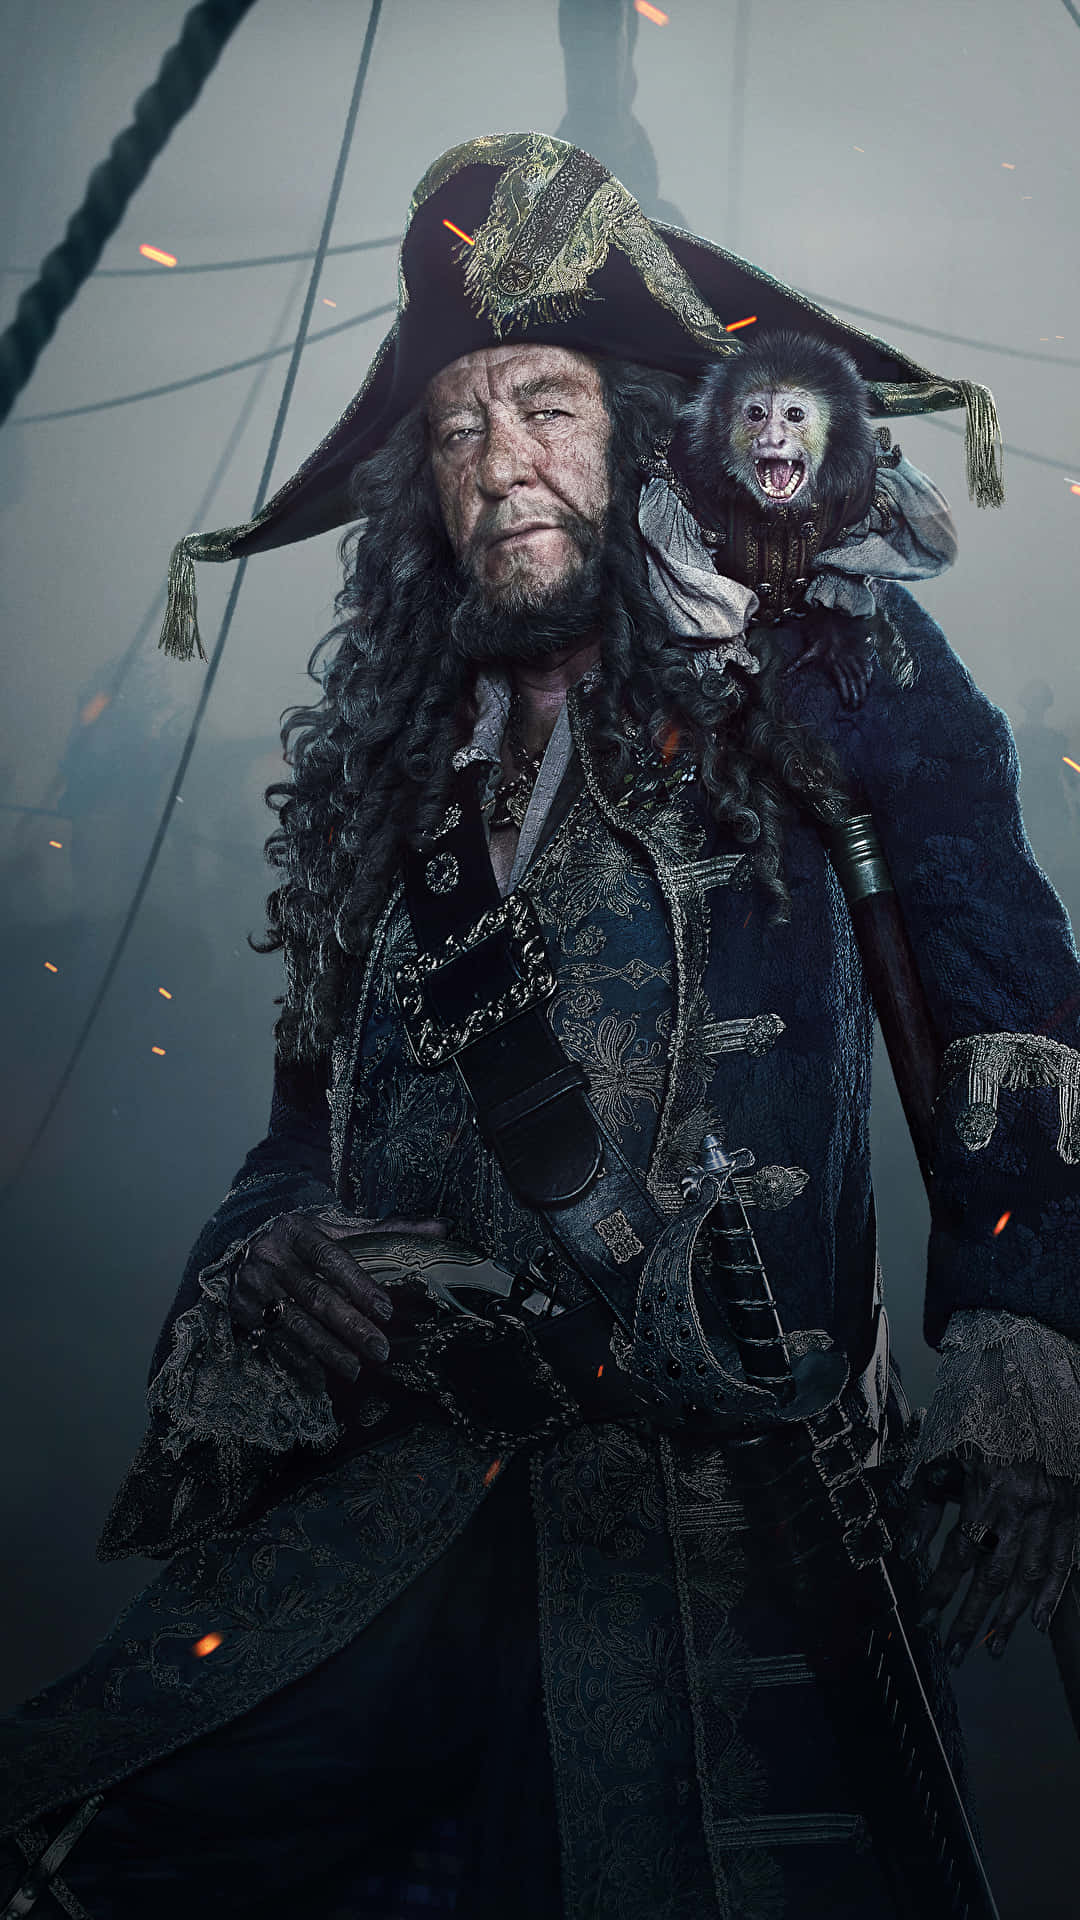 Captain Jack Sparrow on a Bold Adventure